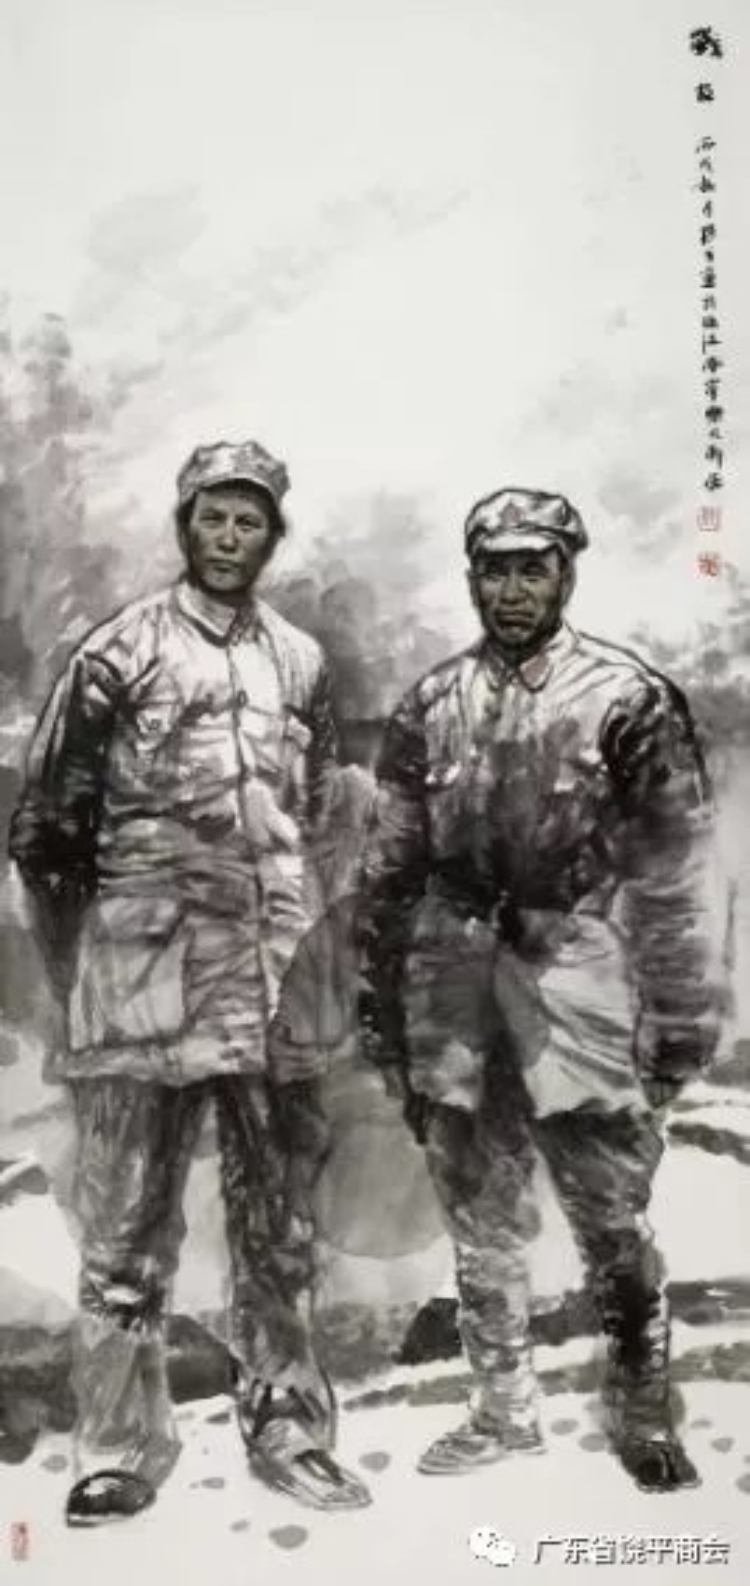 缅怀革命先烈 弘扬苏区革命精神 "茂芝会议"召开92周年美术作品展在穗举行